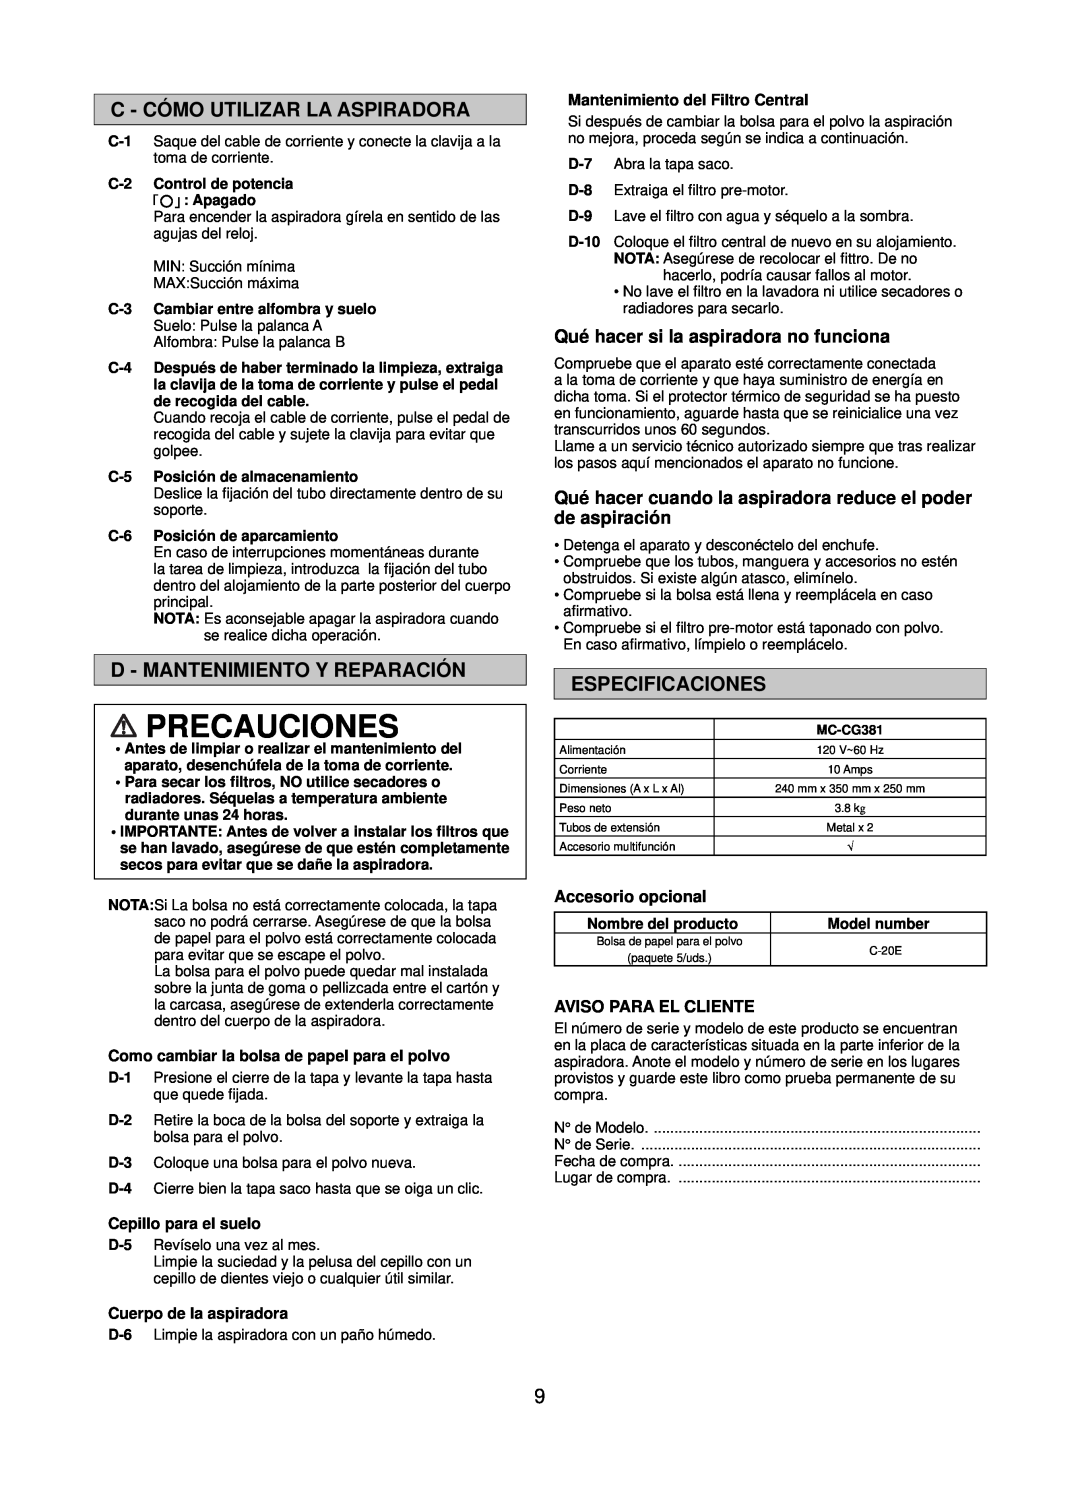 Panasonic Mccg381 Precauciones, C - Cómo Utilizar La Aspiradora, D - Mantenimiento Y Reparación, Especificaciones 